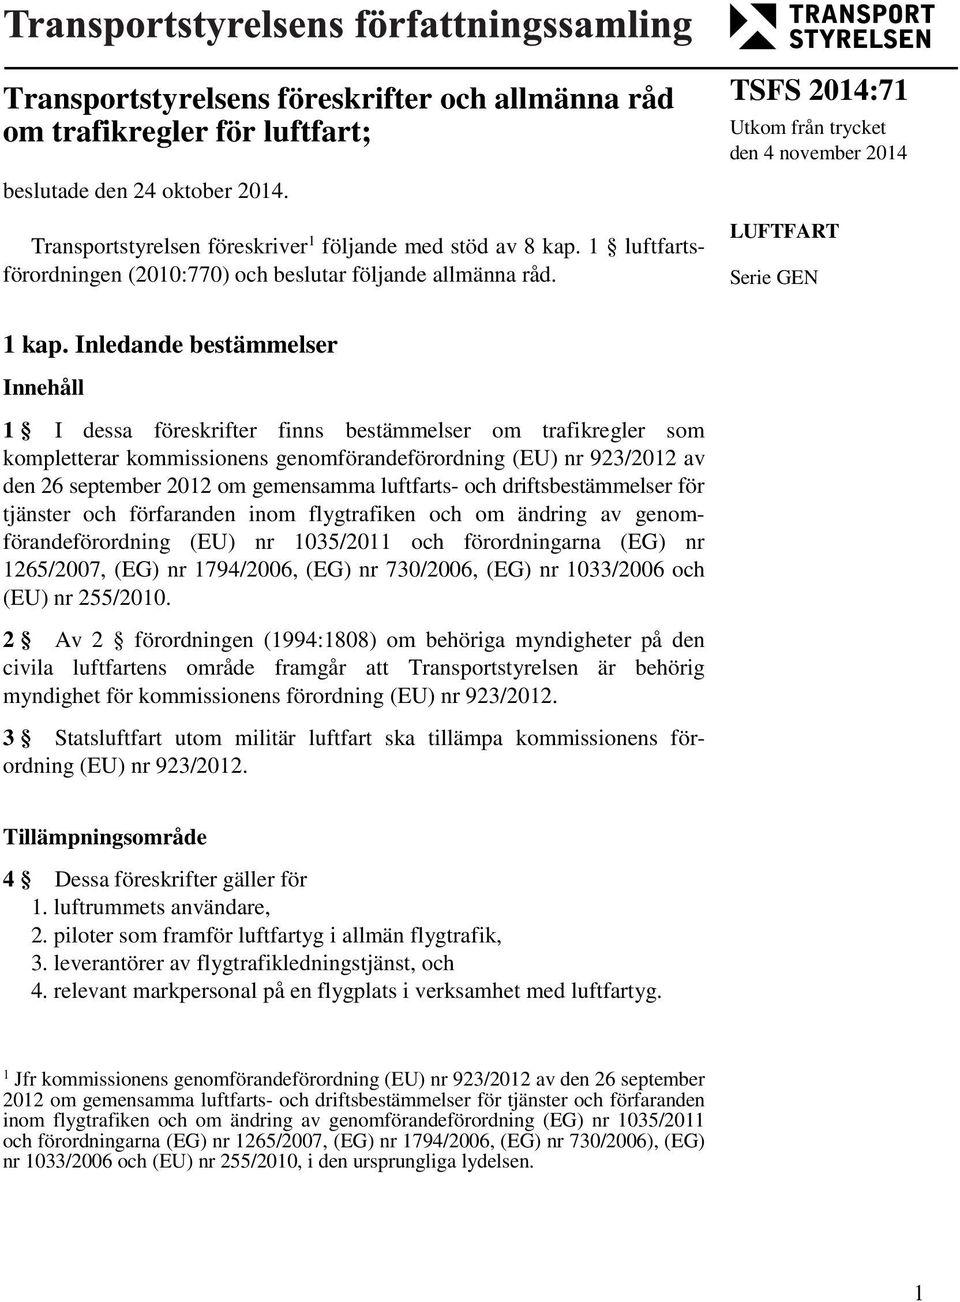 Inledande bestämmelser Innehåll 1 I dessa föreskrifter finns bestämmelser om trafikregler som kompletterar kommissionens genomförandeförordning (EU) nr 923/2012 av den 26 september 2012 om gemensamma